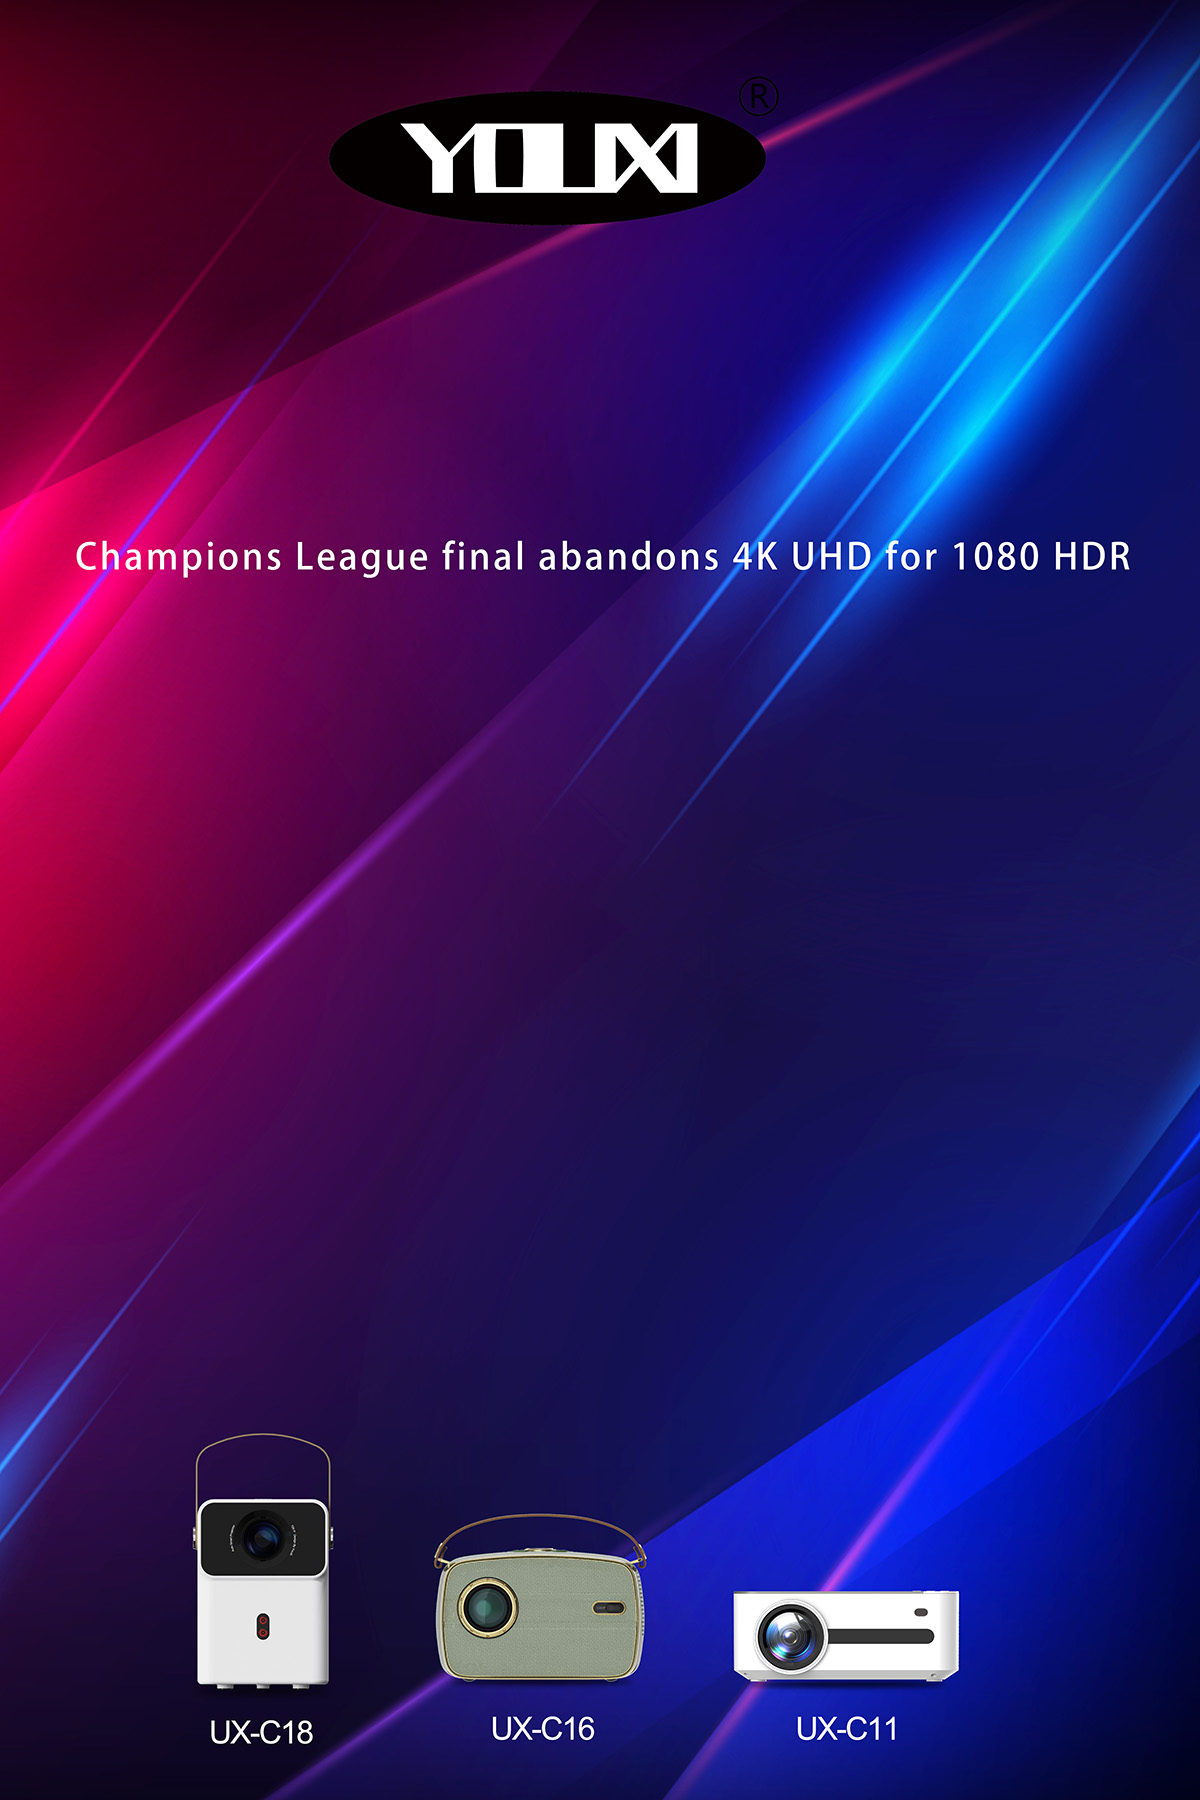 La finale de la Ligue des champions abandonne le 4K UHD au profit du 1080 HDR